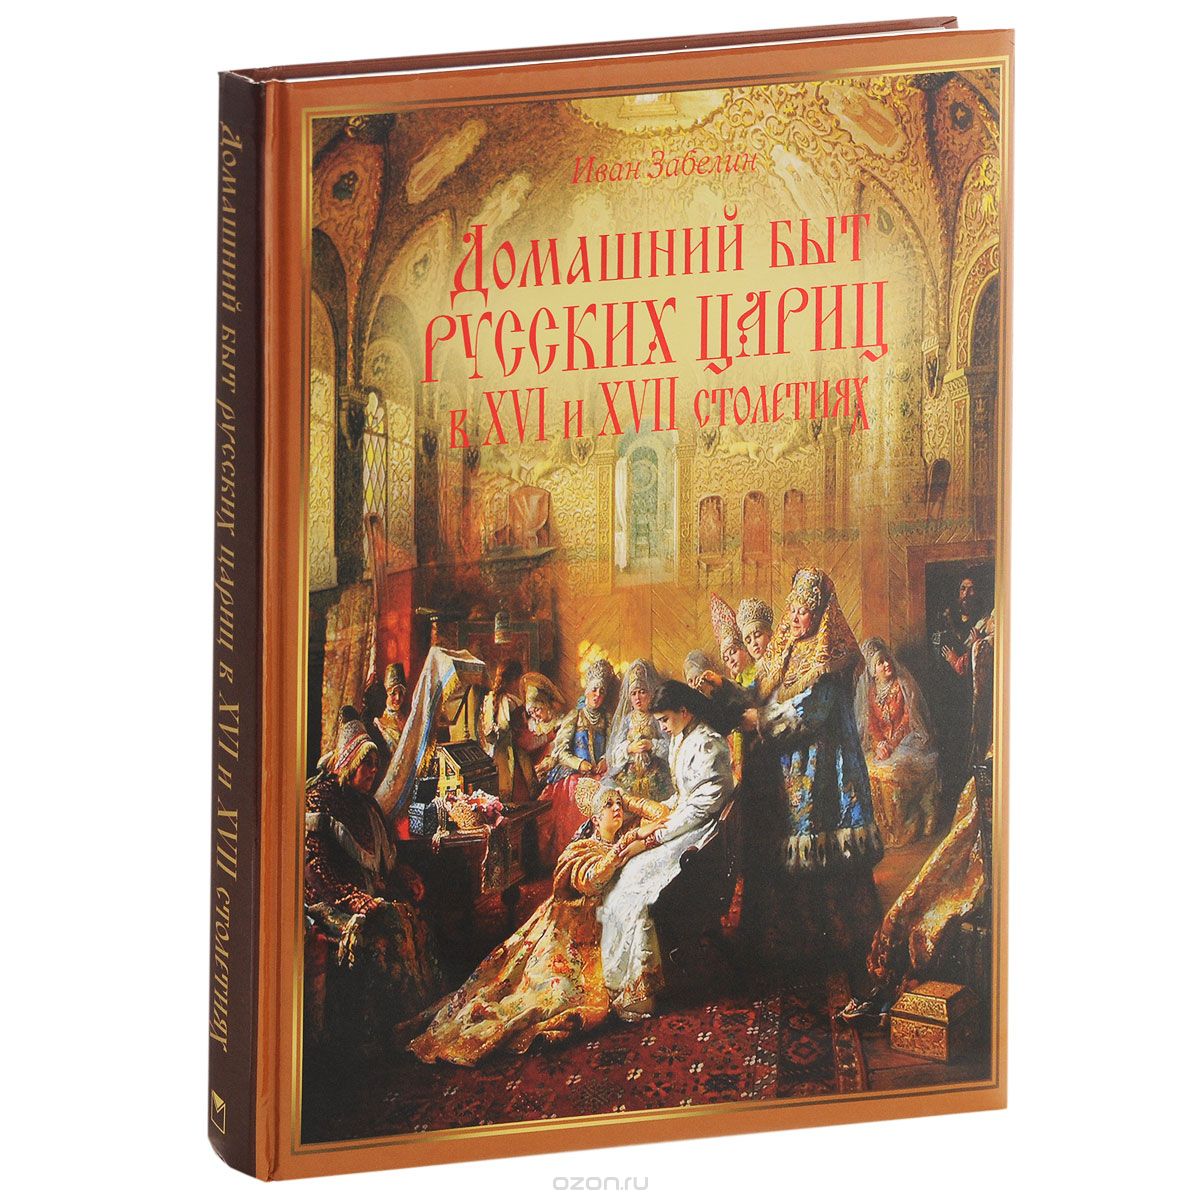 Домашний быт русских цариц в XVI-XVII столетиях, Иван Забелин